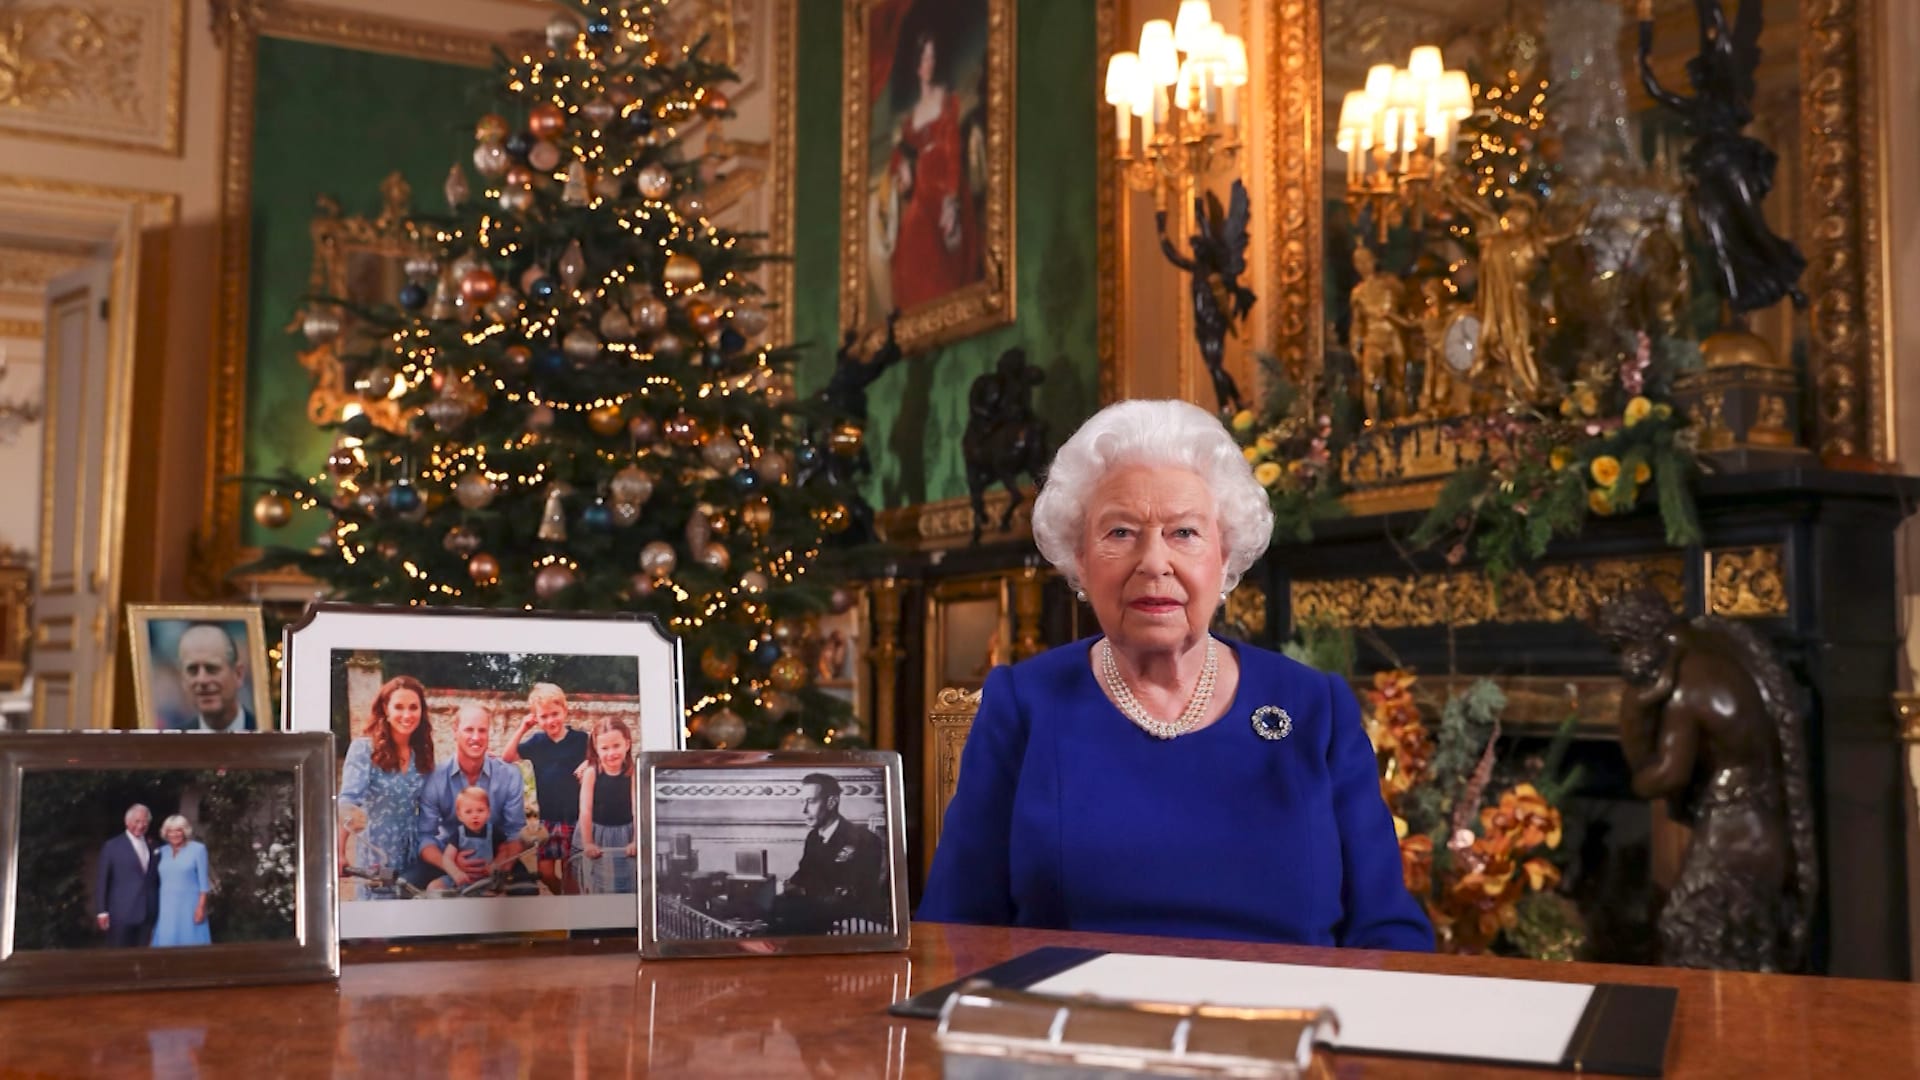 ملكة بريطانيا تلغي حفل عشاء ما قبل عيد الميلاد للعائلة.. هل للأمر علاقة بصحتها؟